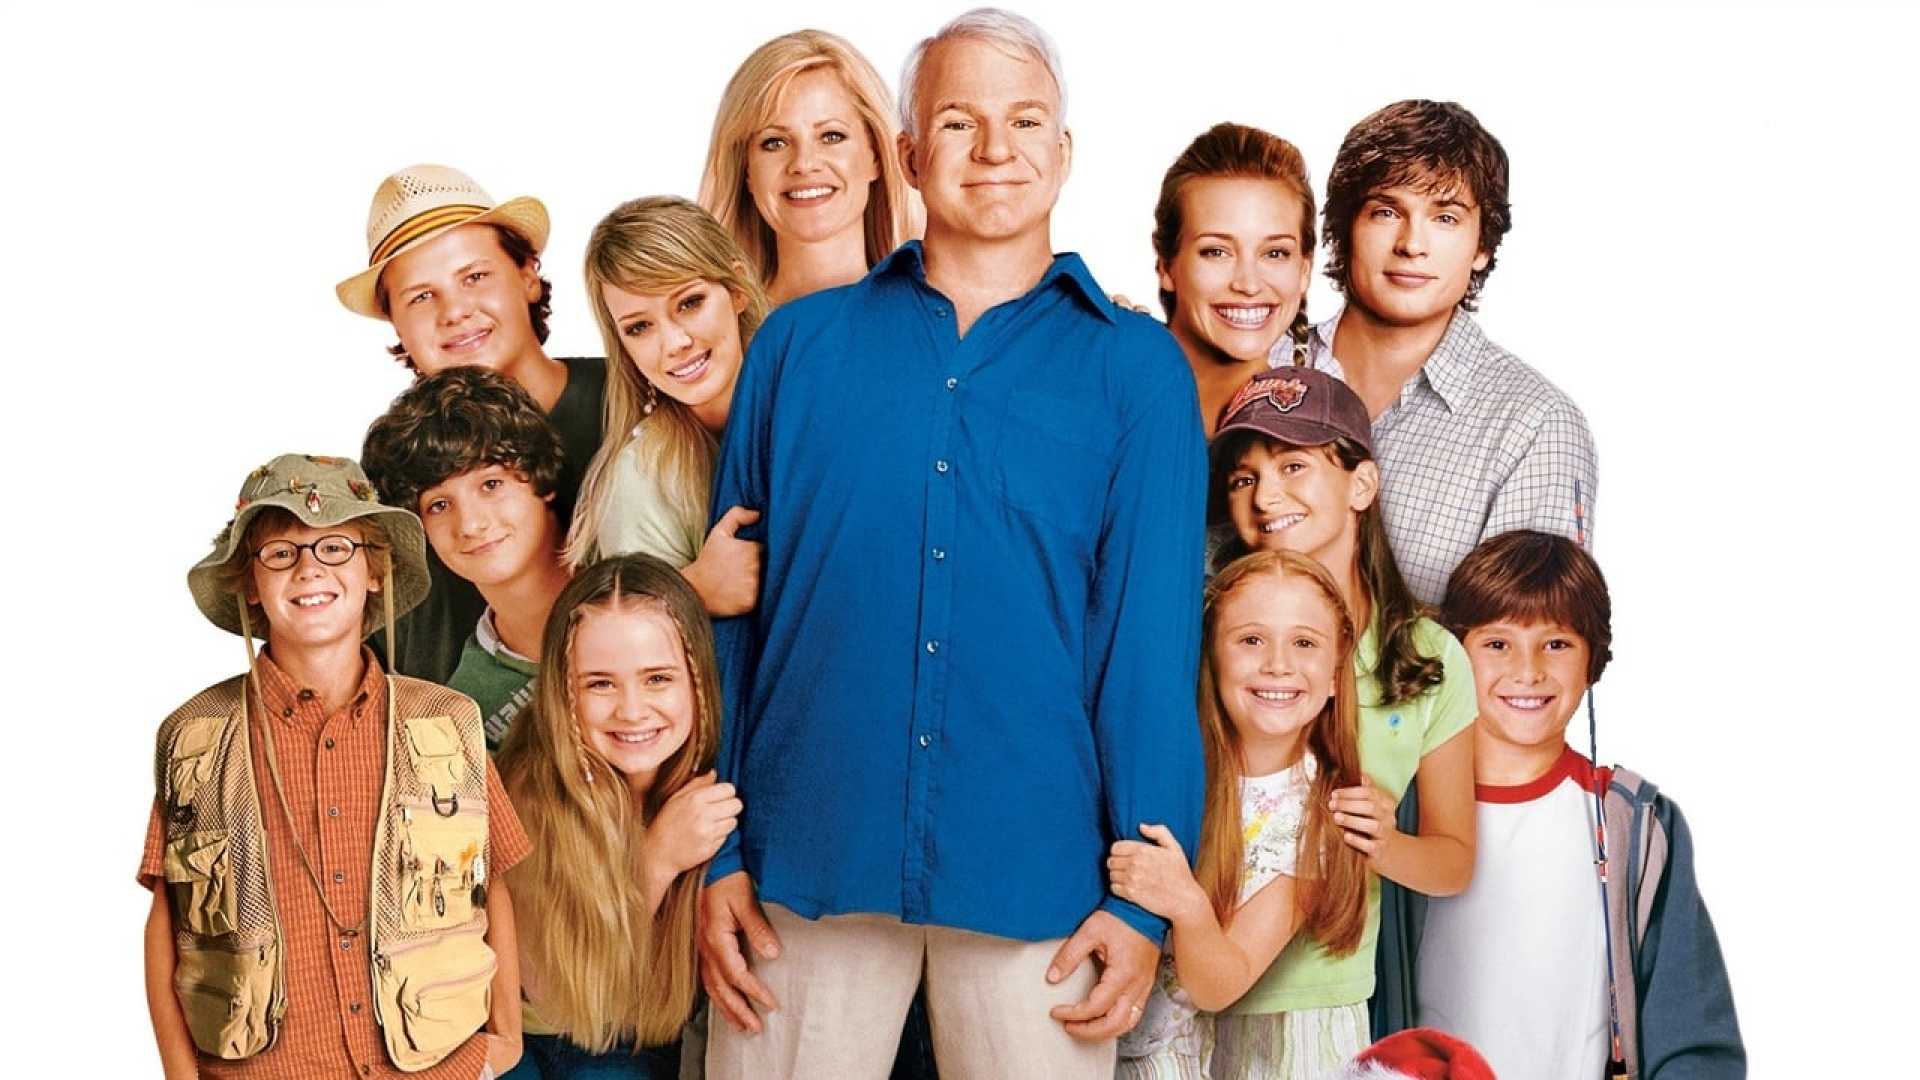 Родственники 2 часть. Cheaper by the dozen 2003. Американская семья. Американская комедия про многодетную семью.